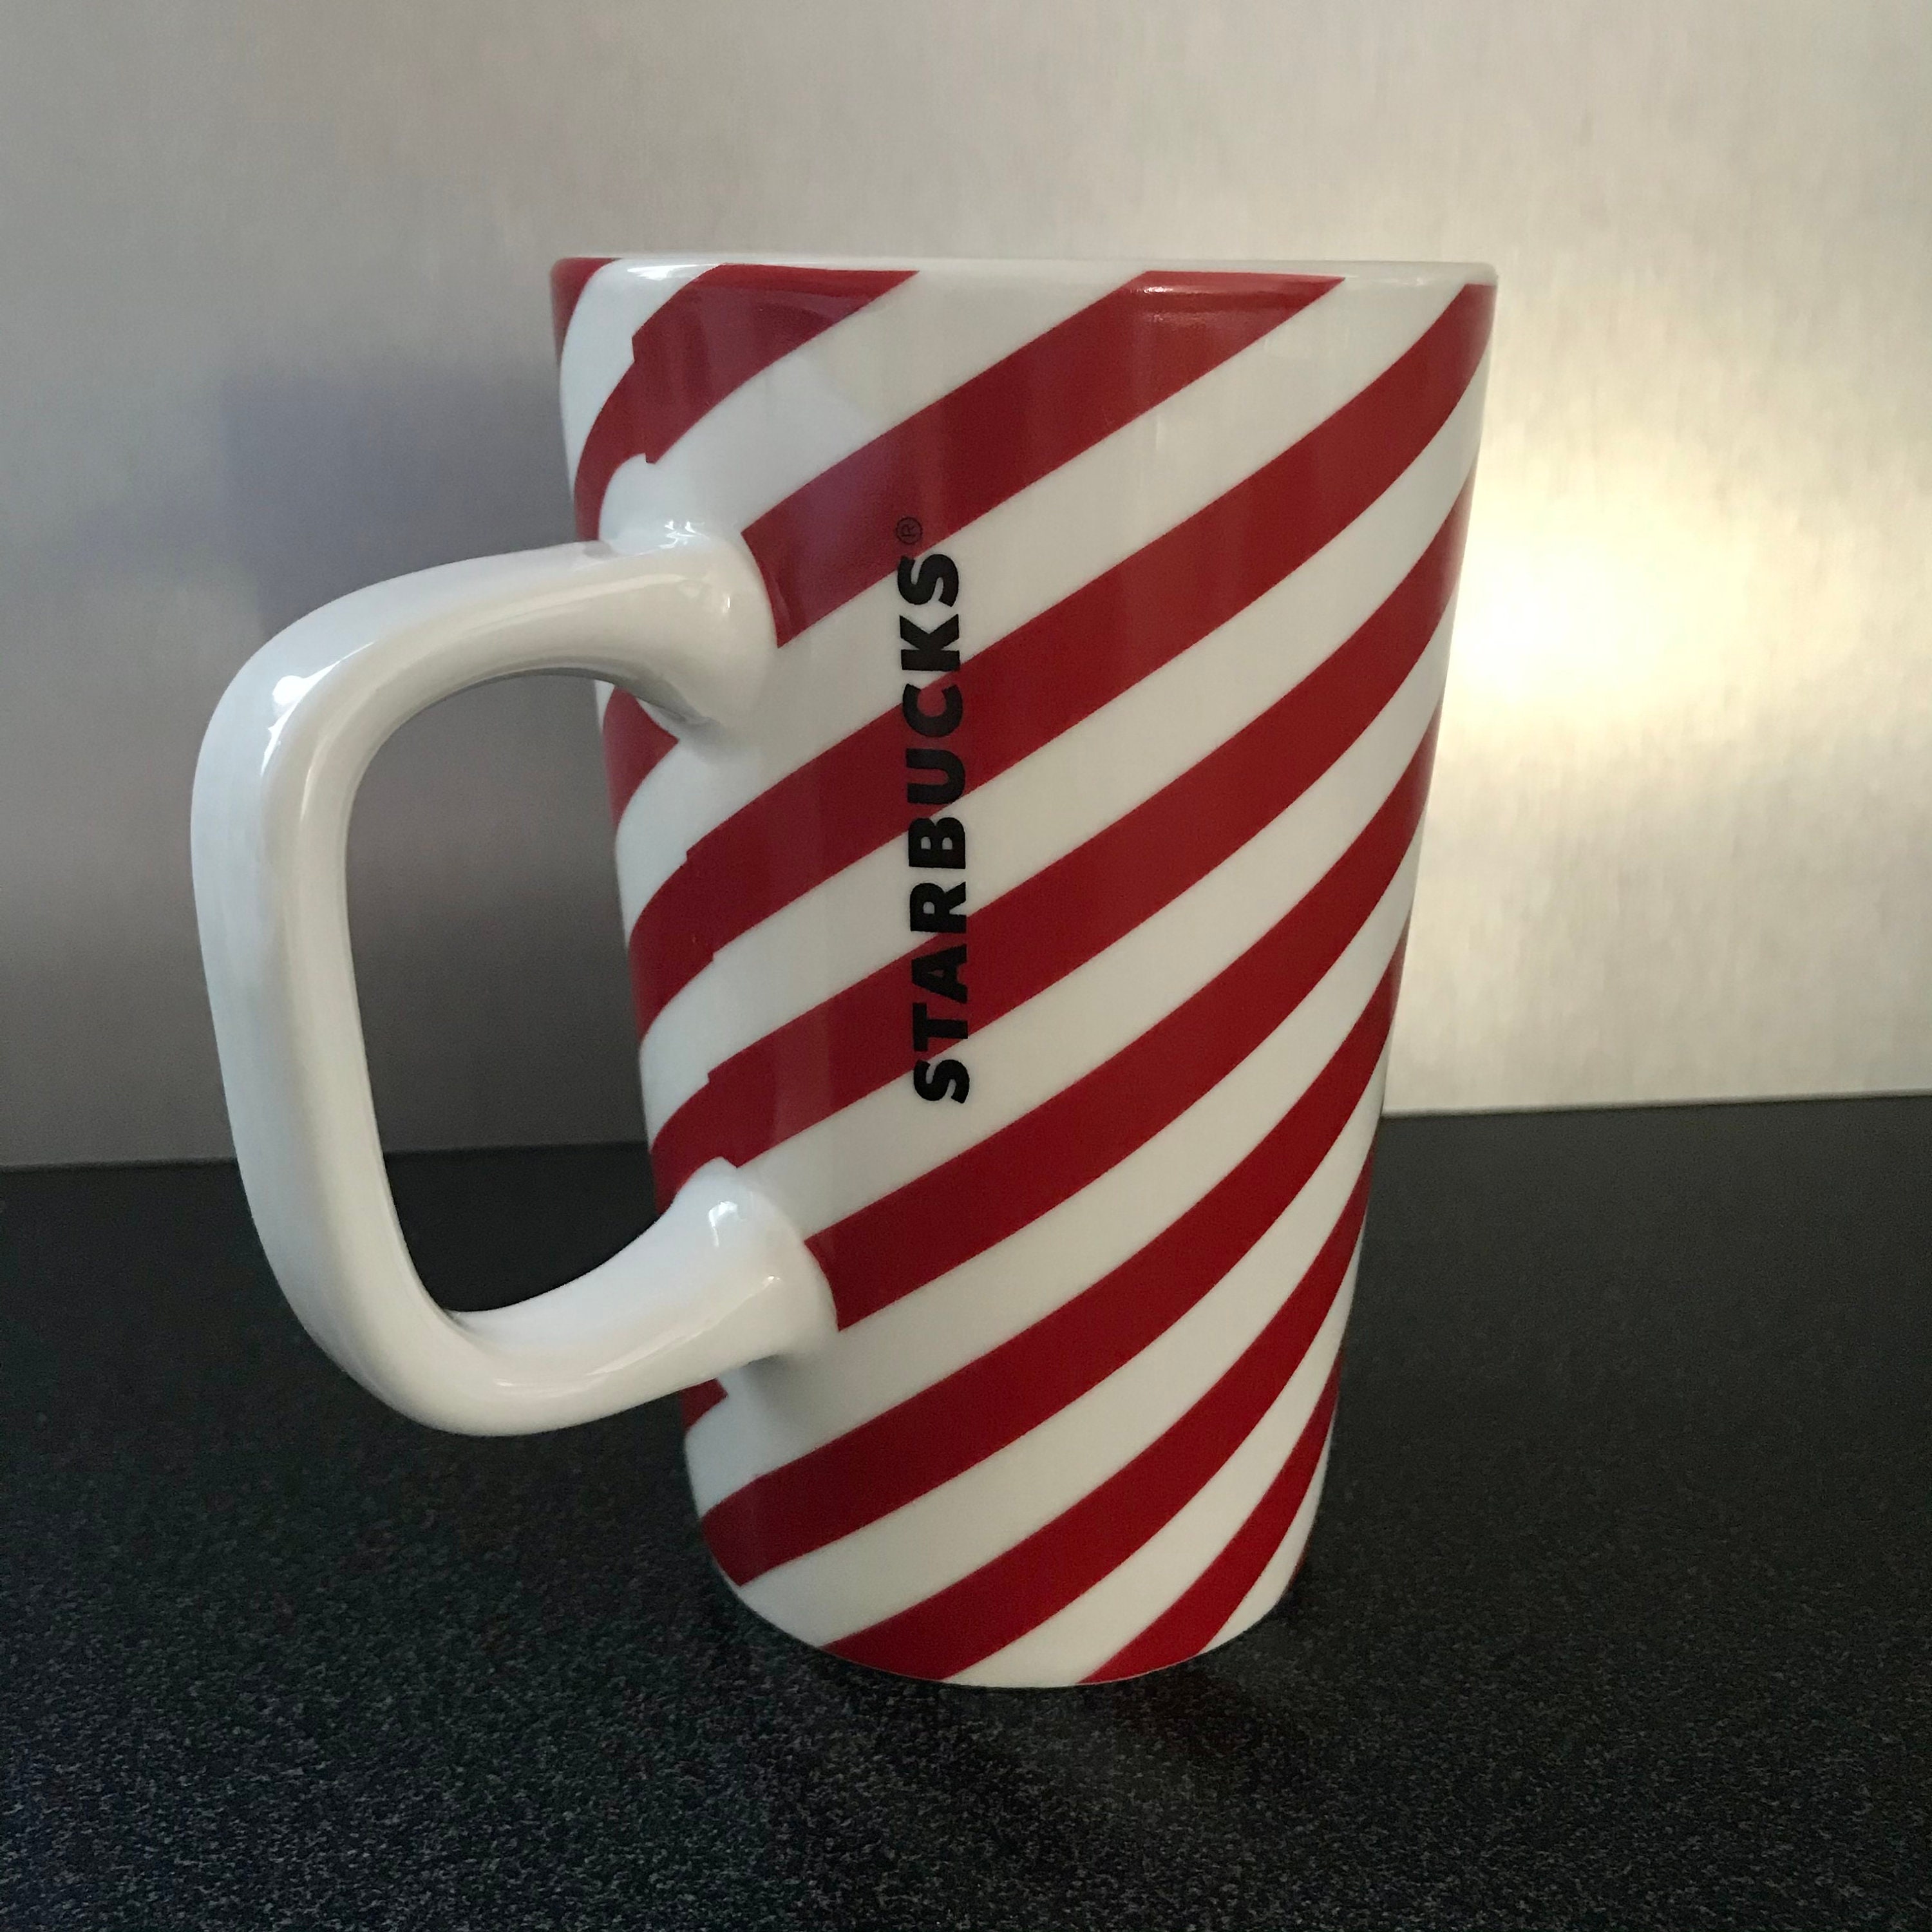 Christmas Mug Wrap, Candy Cane Mug Design, Sweet (2332117)